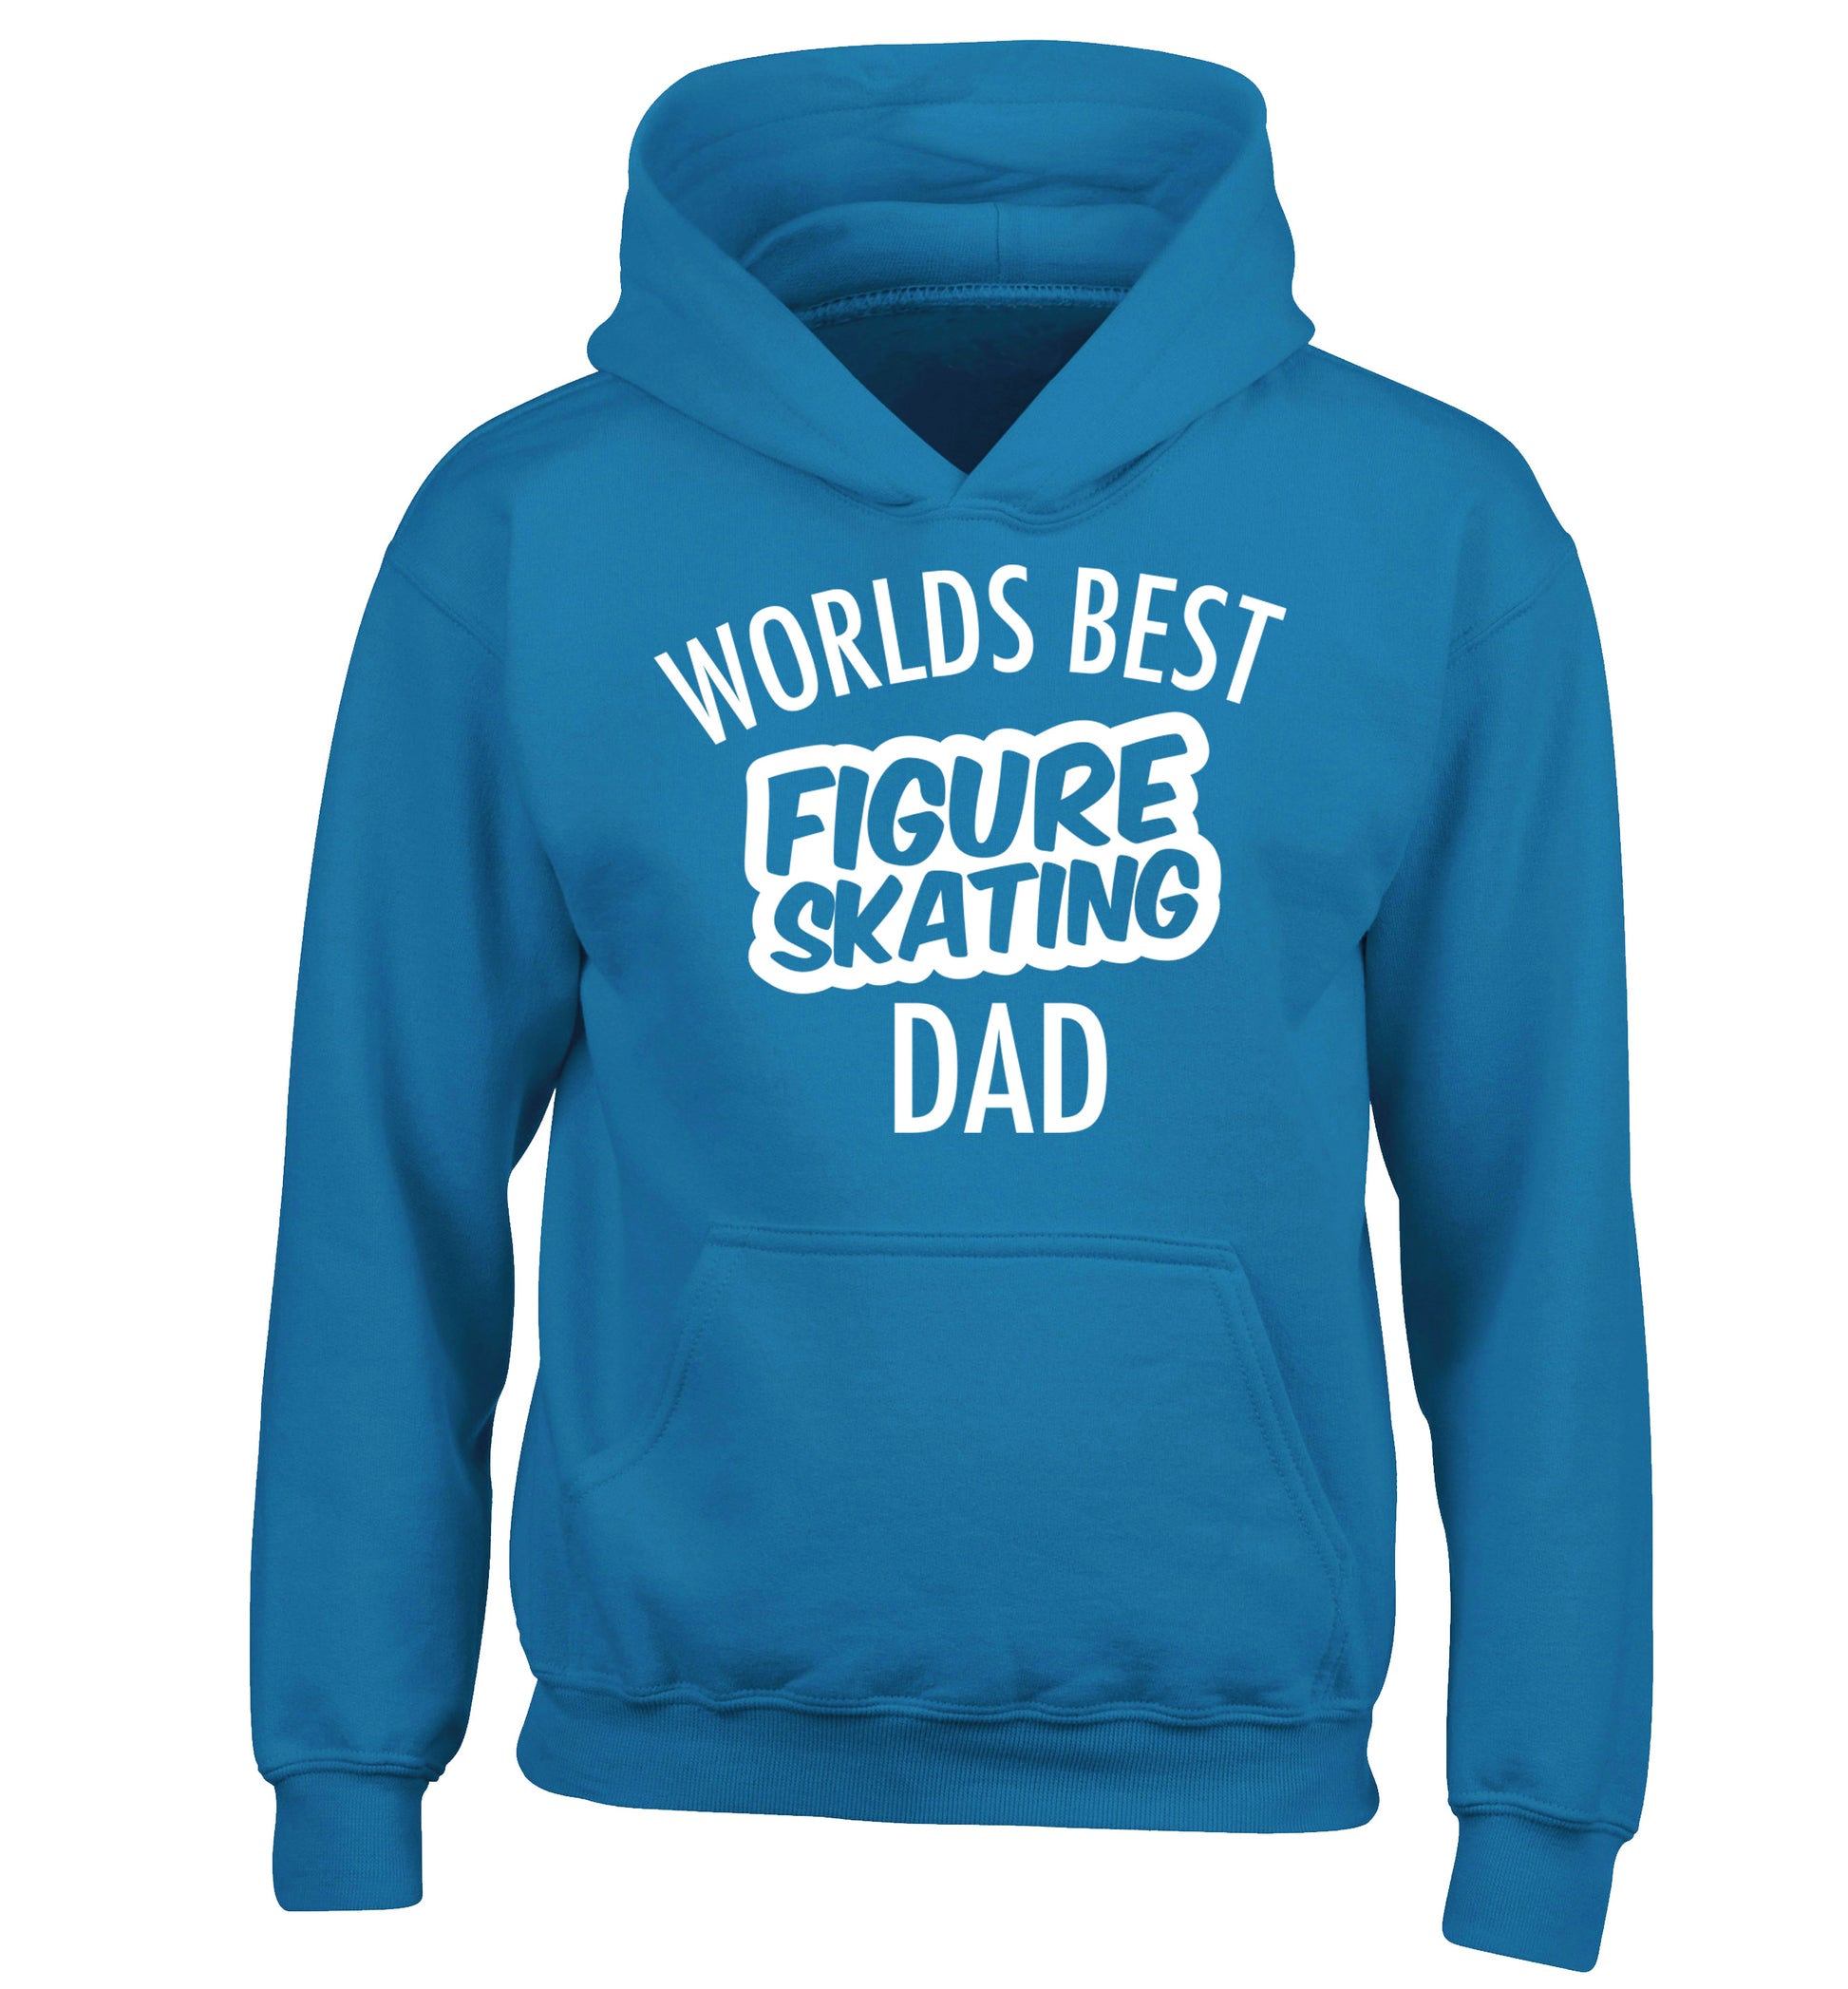 Worlds best figure skating dad children's blue hoodie 12-14 Years